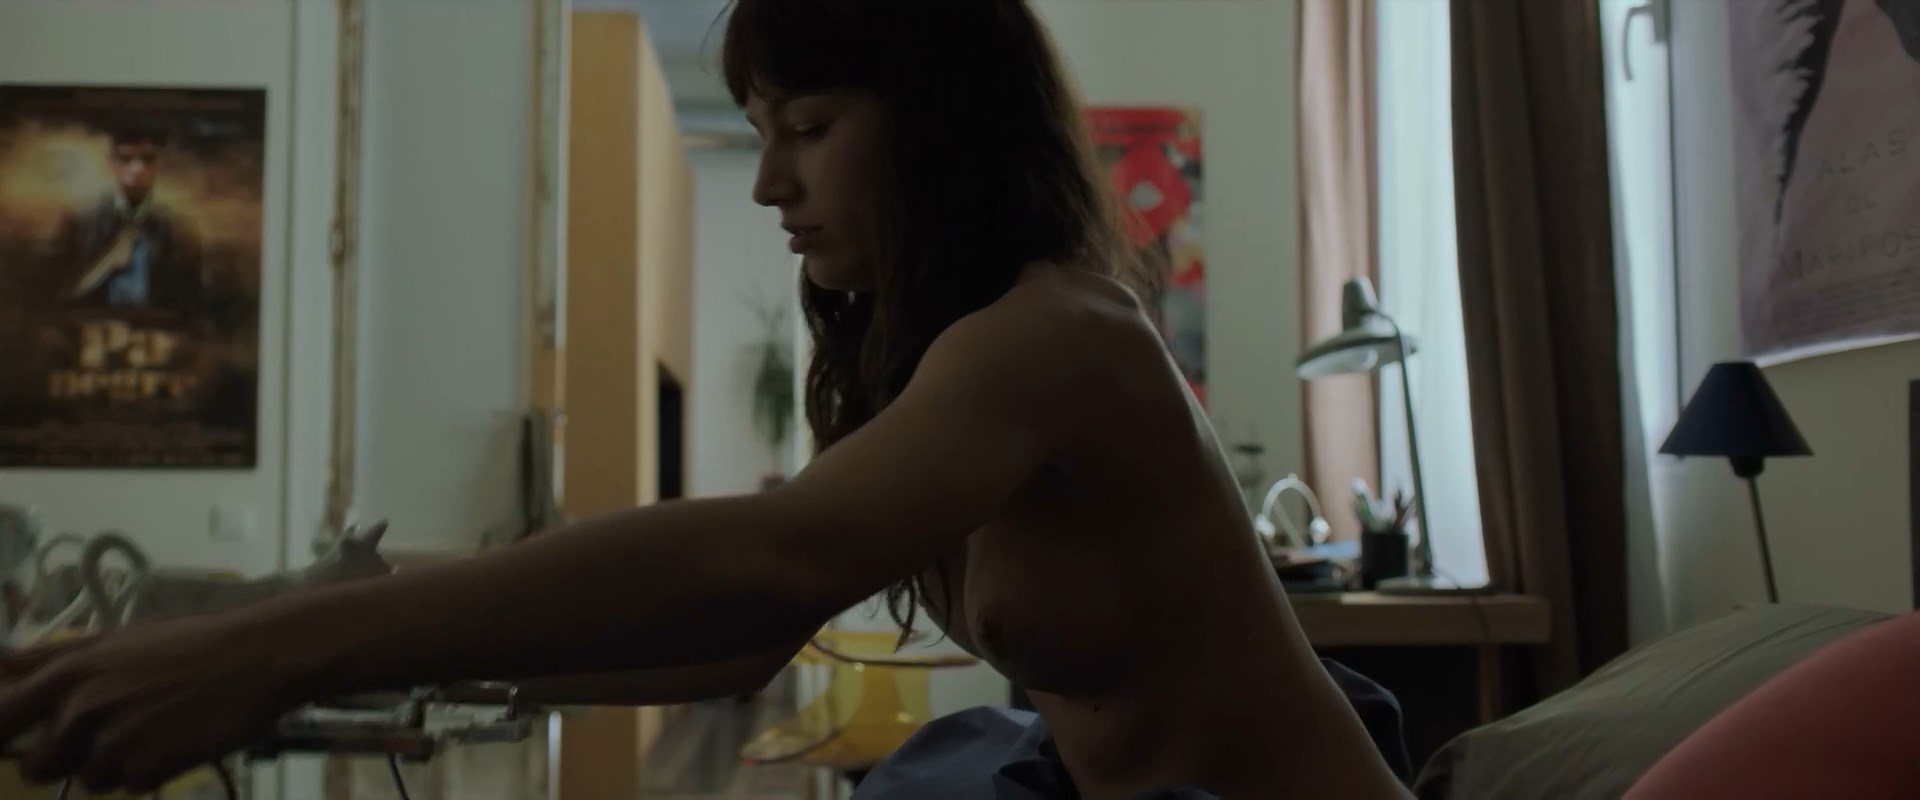 Nude Video Celebs Ursula Corbero Nude El Arbol De La Sangre 2018